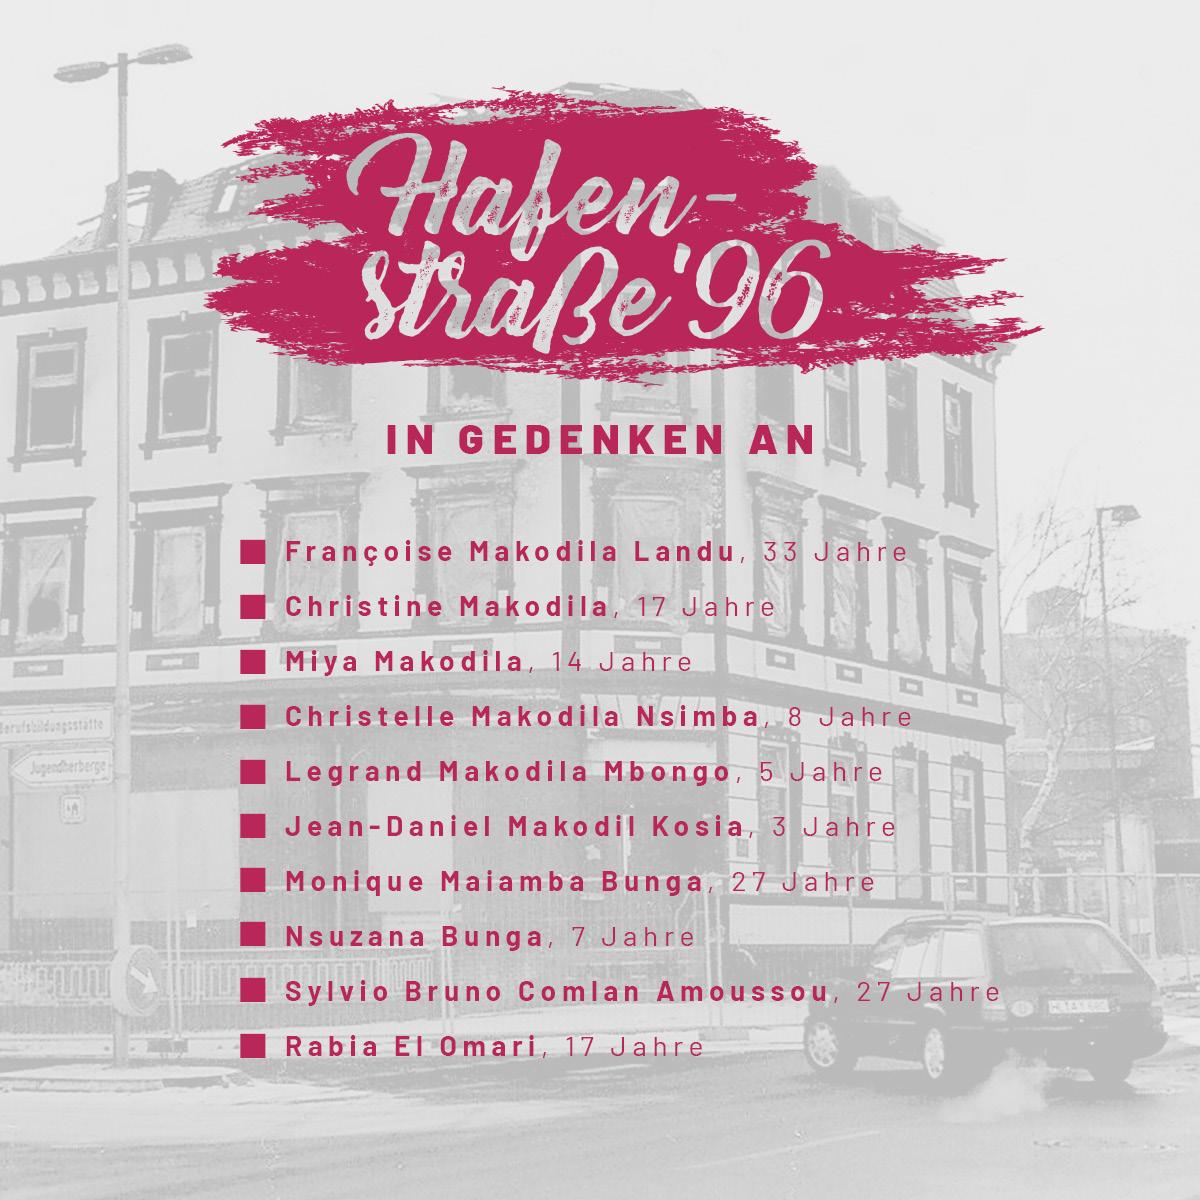 Wir gedenken der Opfer des rassistischen Brandanschlags von 1996 in der Hafenstraße 52 in Lübeck. Unsere Solidarität gilt den Überlebenden und allen Betroffenen rassistischer Gewalt.

#Lübeck #NoNazisSH #Antifa #RassismusTötet #HafenstraßenMordUnvergessen